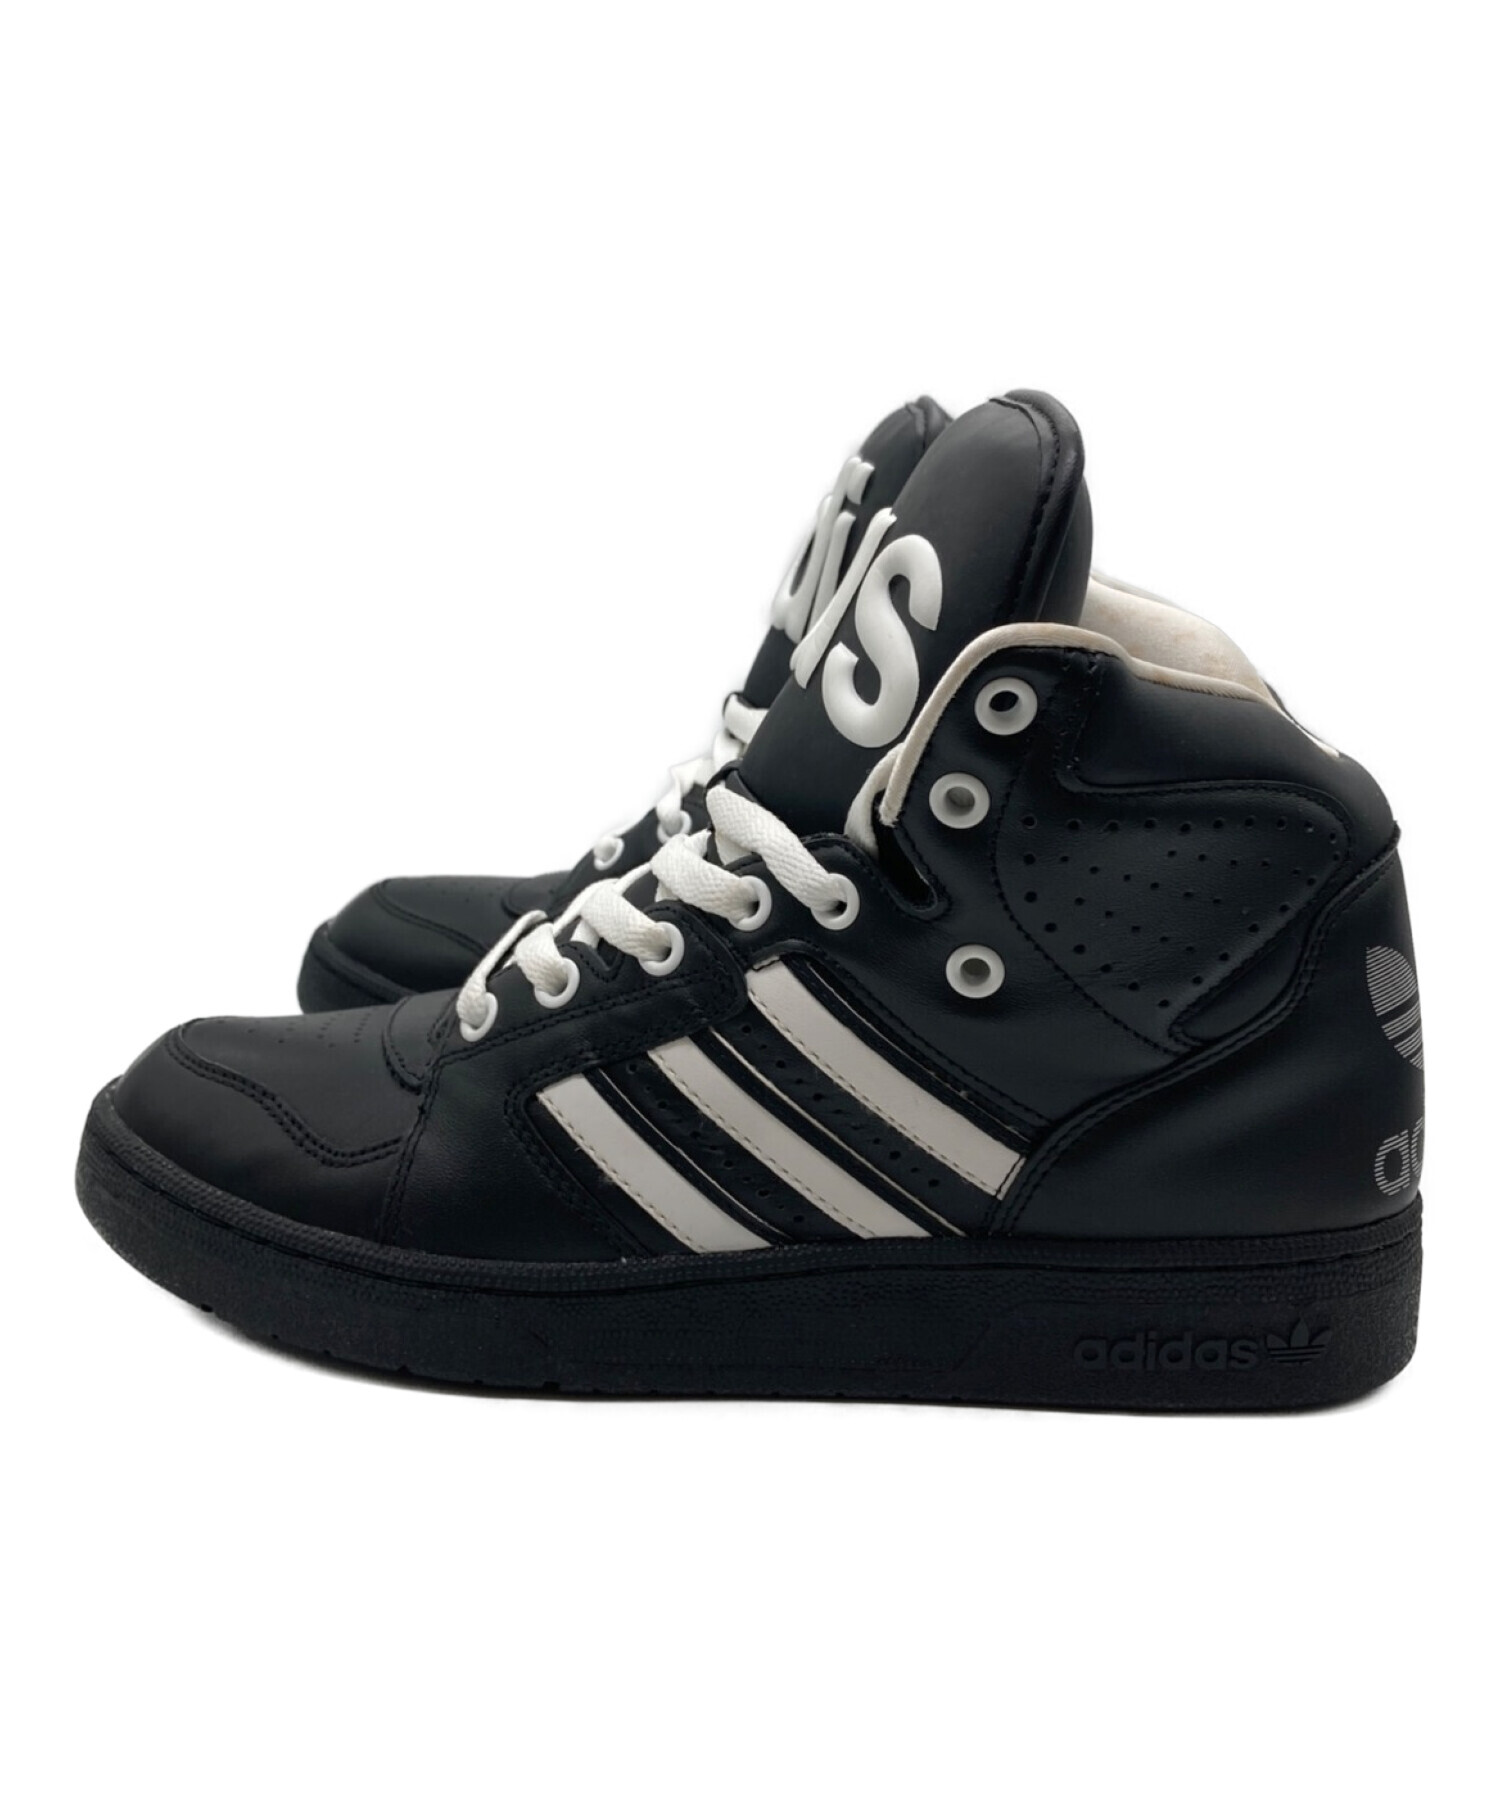 adidas (アディダス) JEREMY SCOTT (ジェレミースコット) INSTINCT HI ブラック×ホワイト サイズ:25.5cm